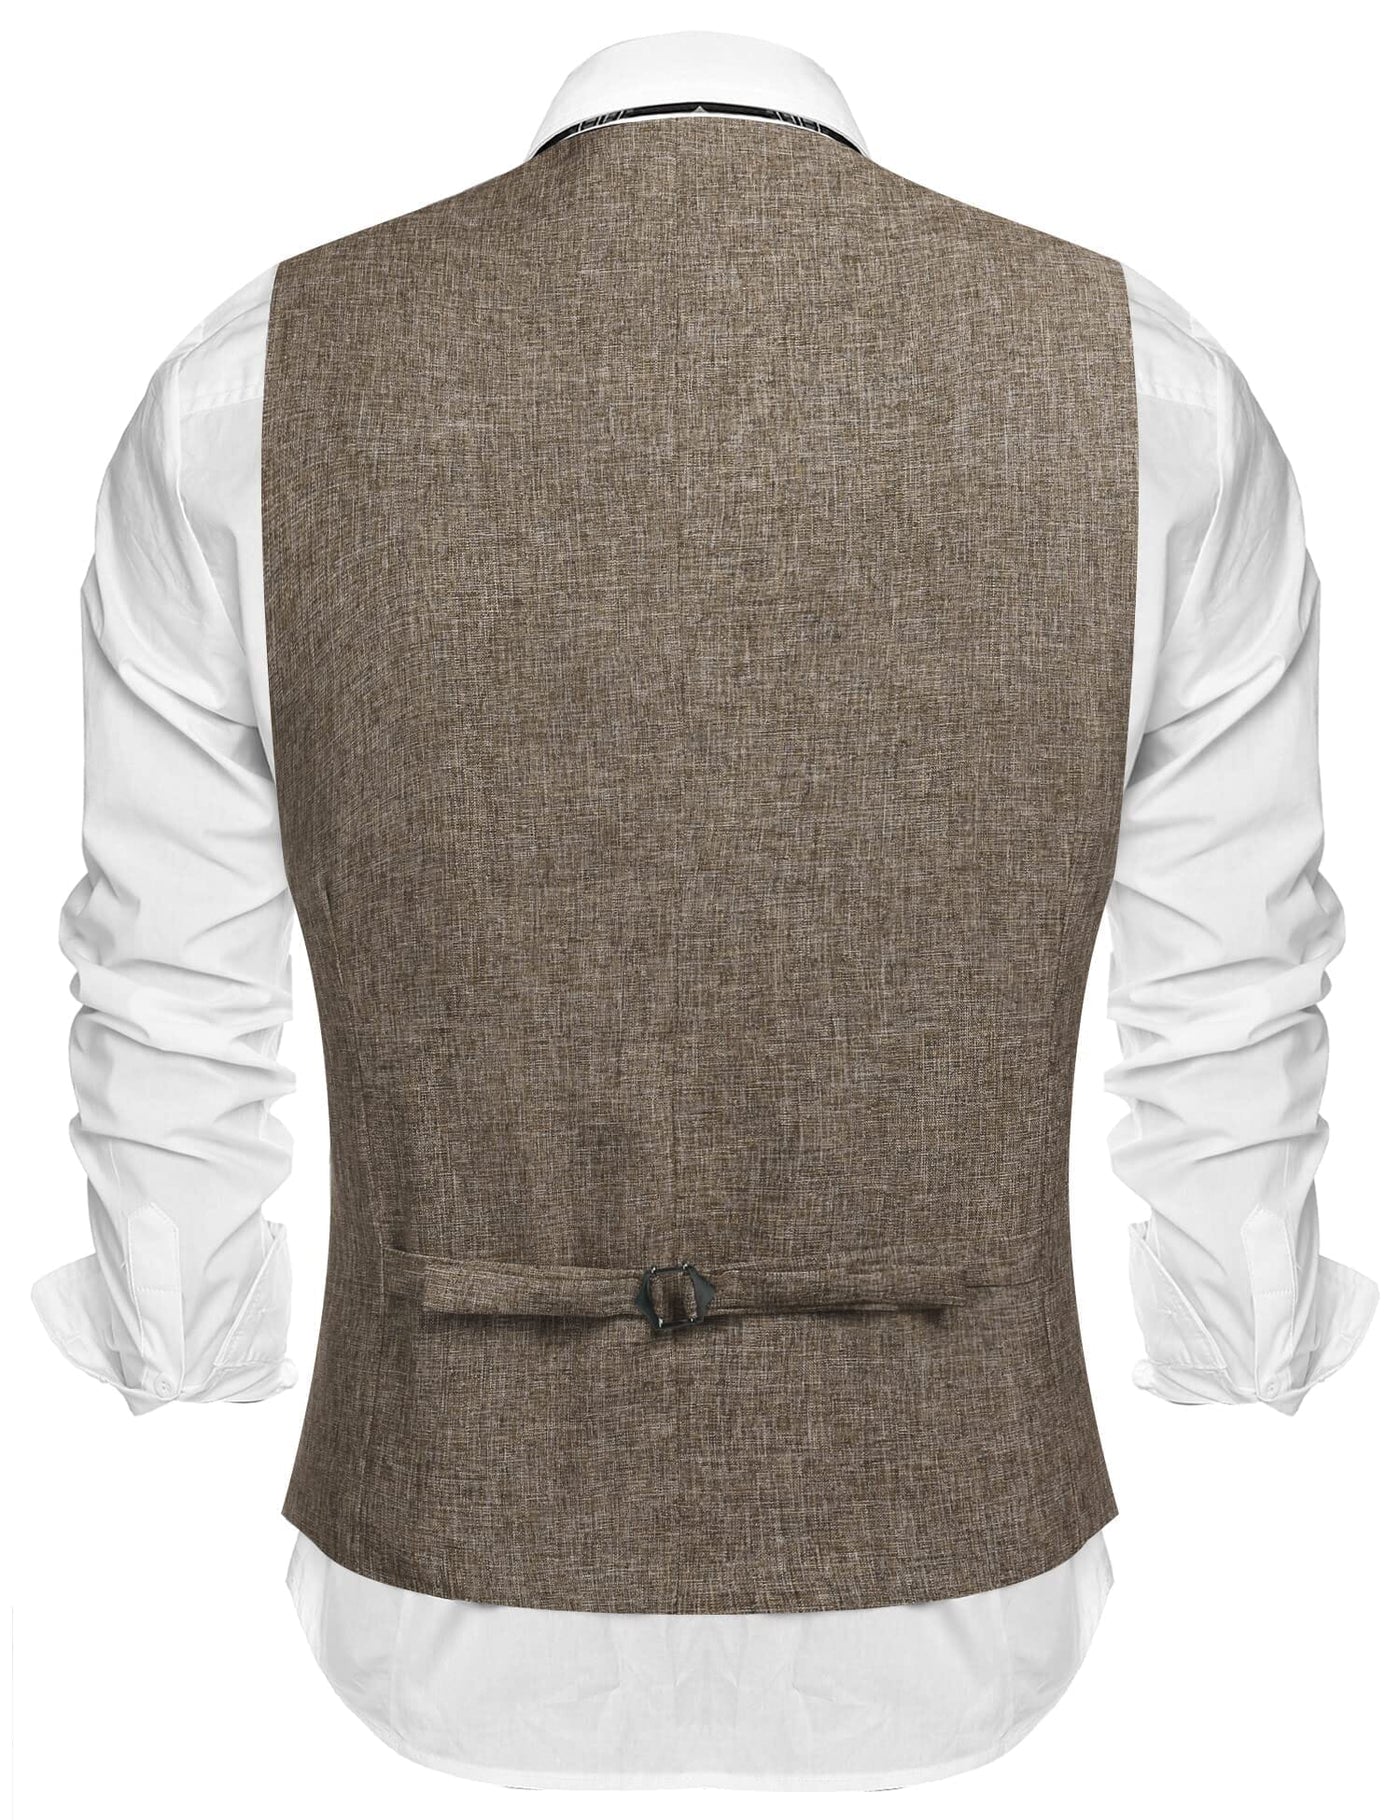 Coofandy Waistcoat Business Vests (US Only) Vest coofandy 